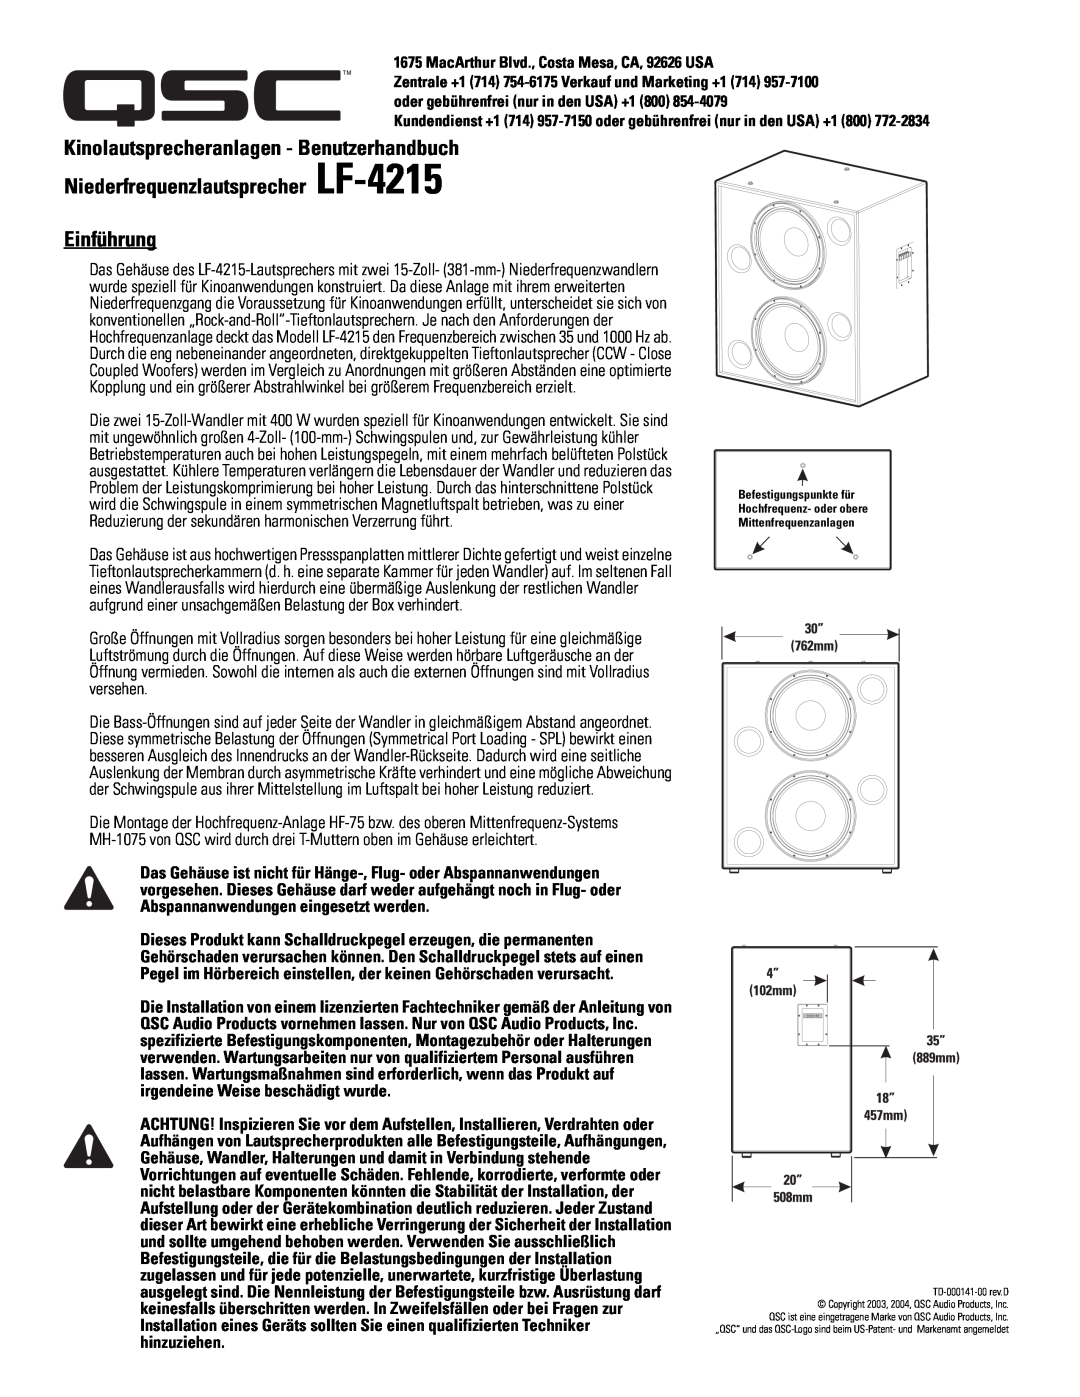 Polaroid user manual Kinolautsprecheranlagen - Benutzerhandbuch, Niederfrequenzlautsprecher LF-4215 Einführung 